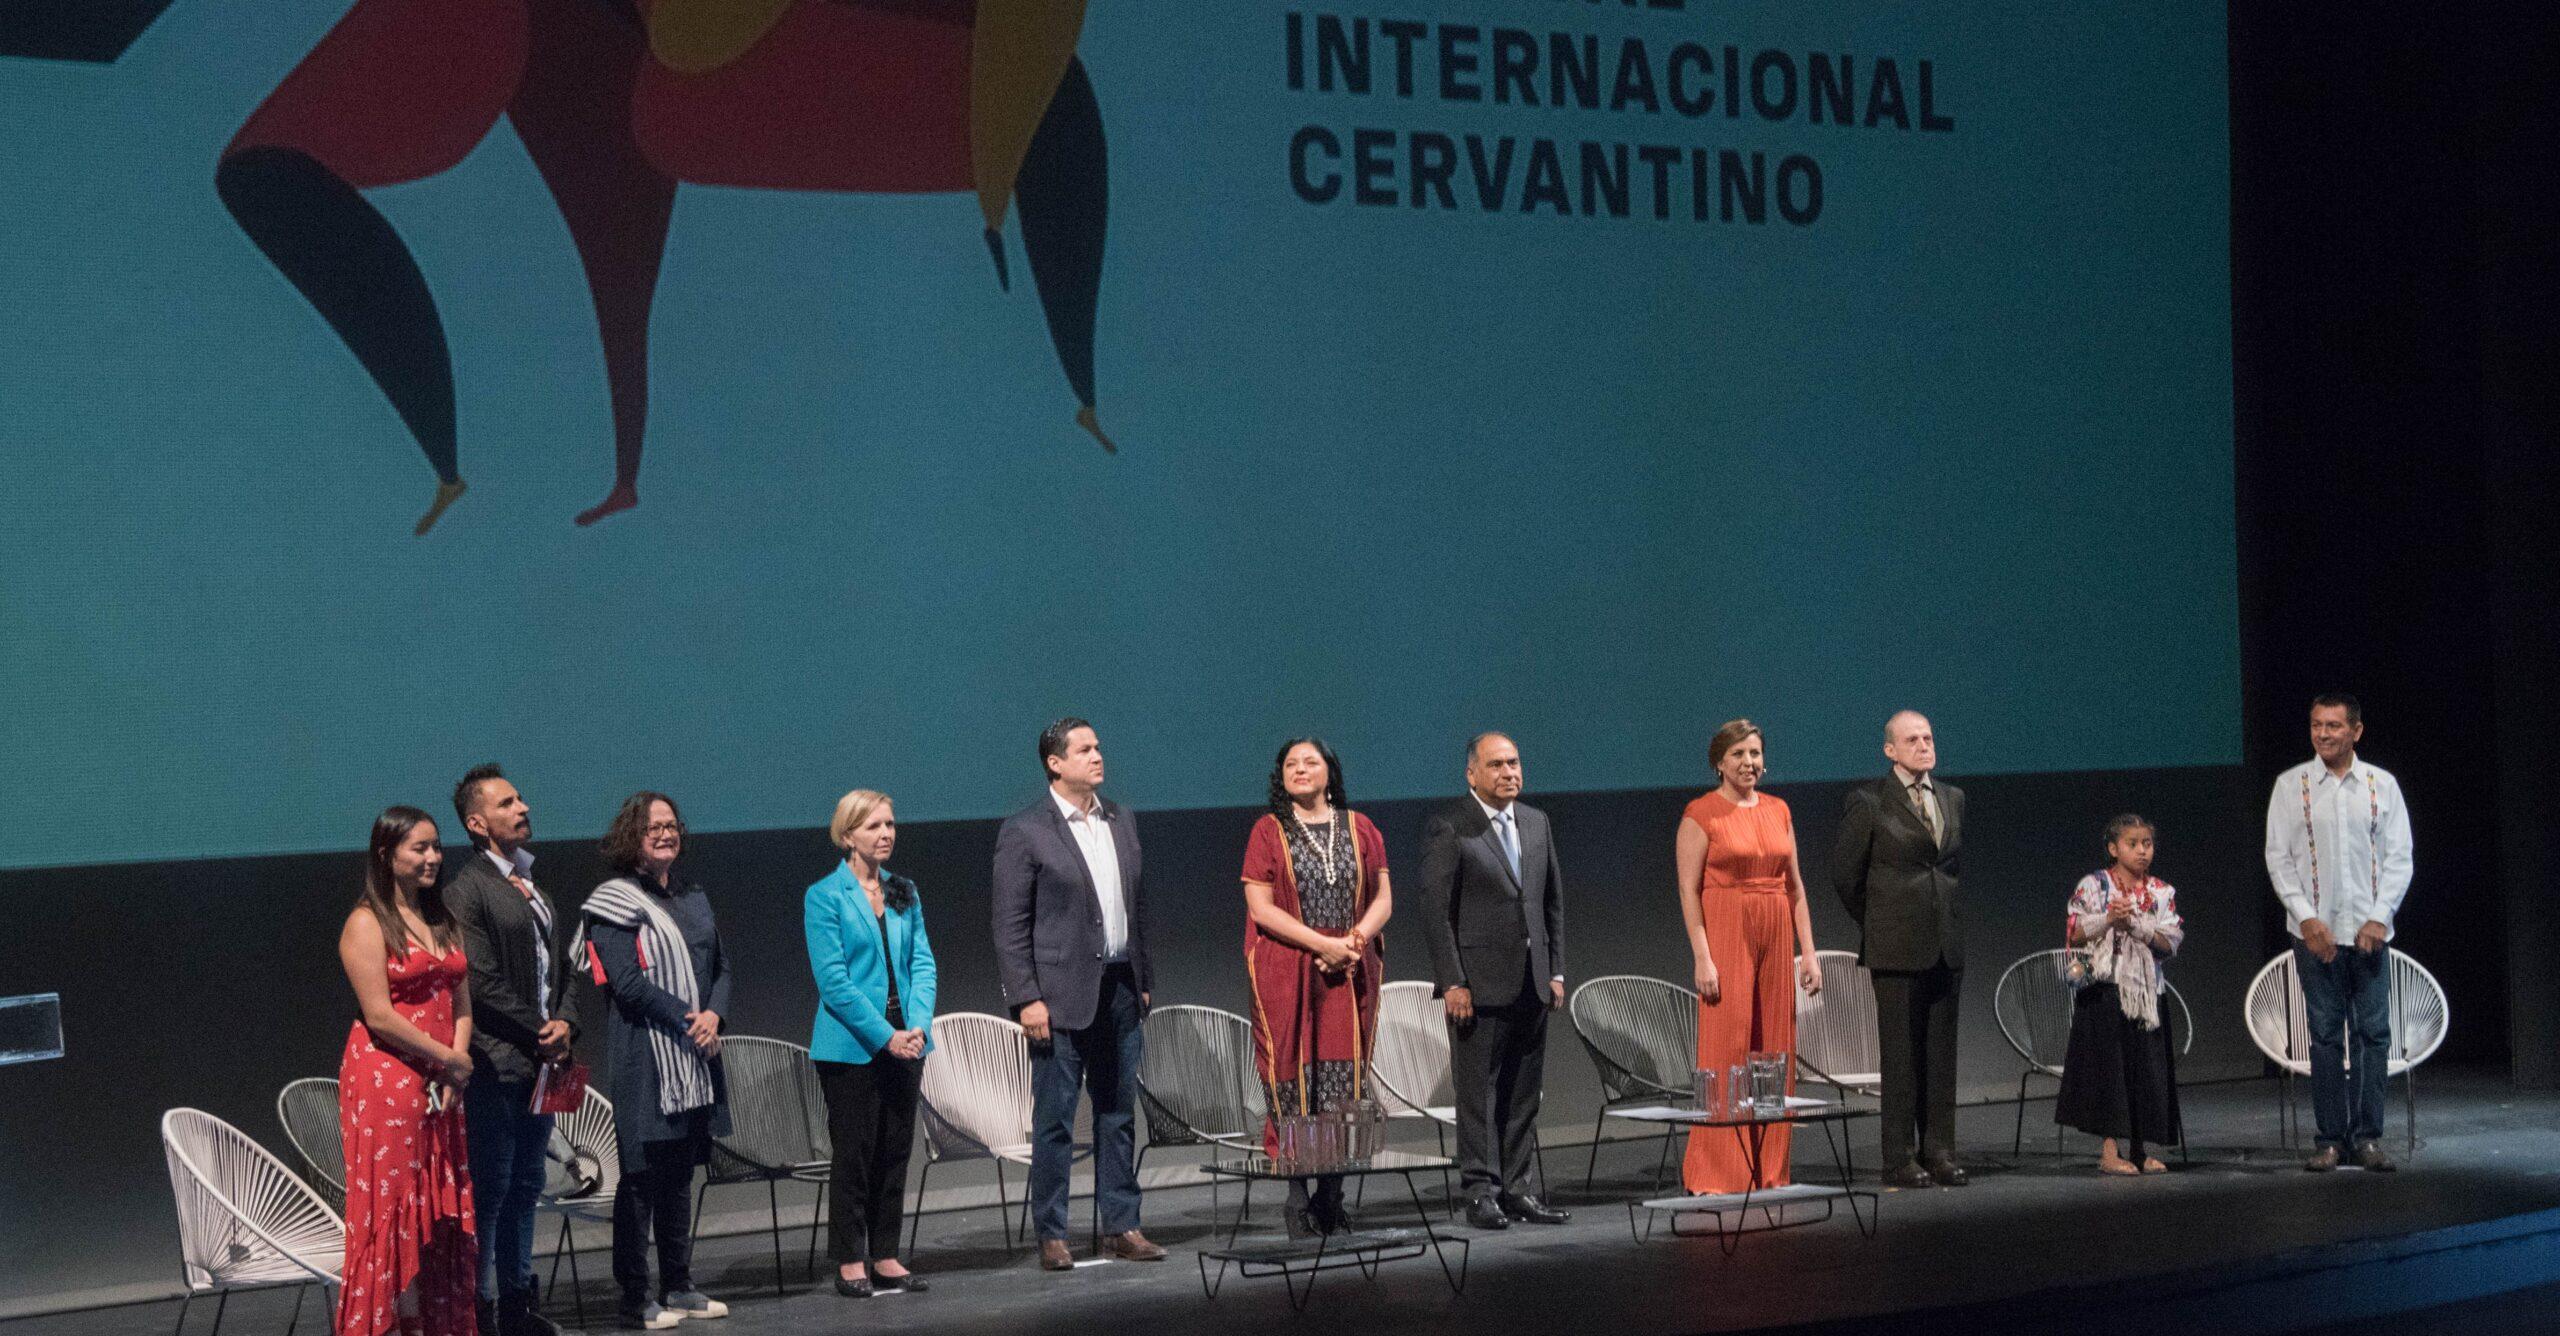 Migraciones, el tema eje en la edición 47 del Festival Internacional Cervantino